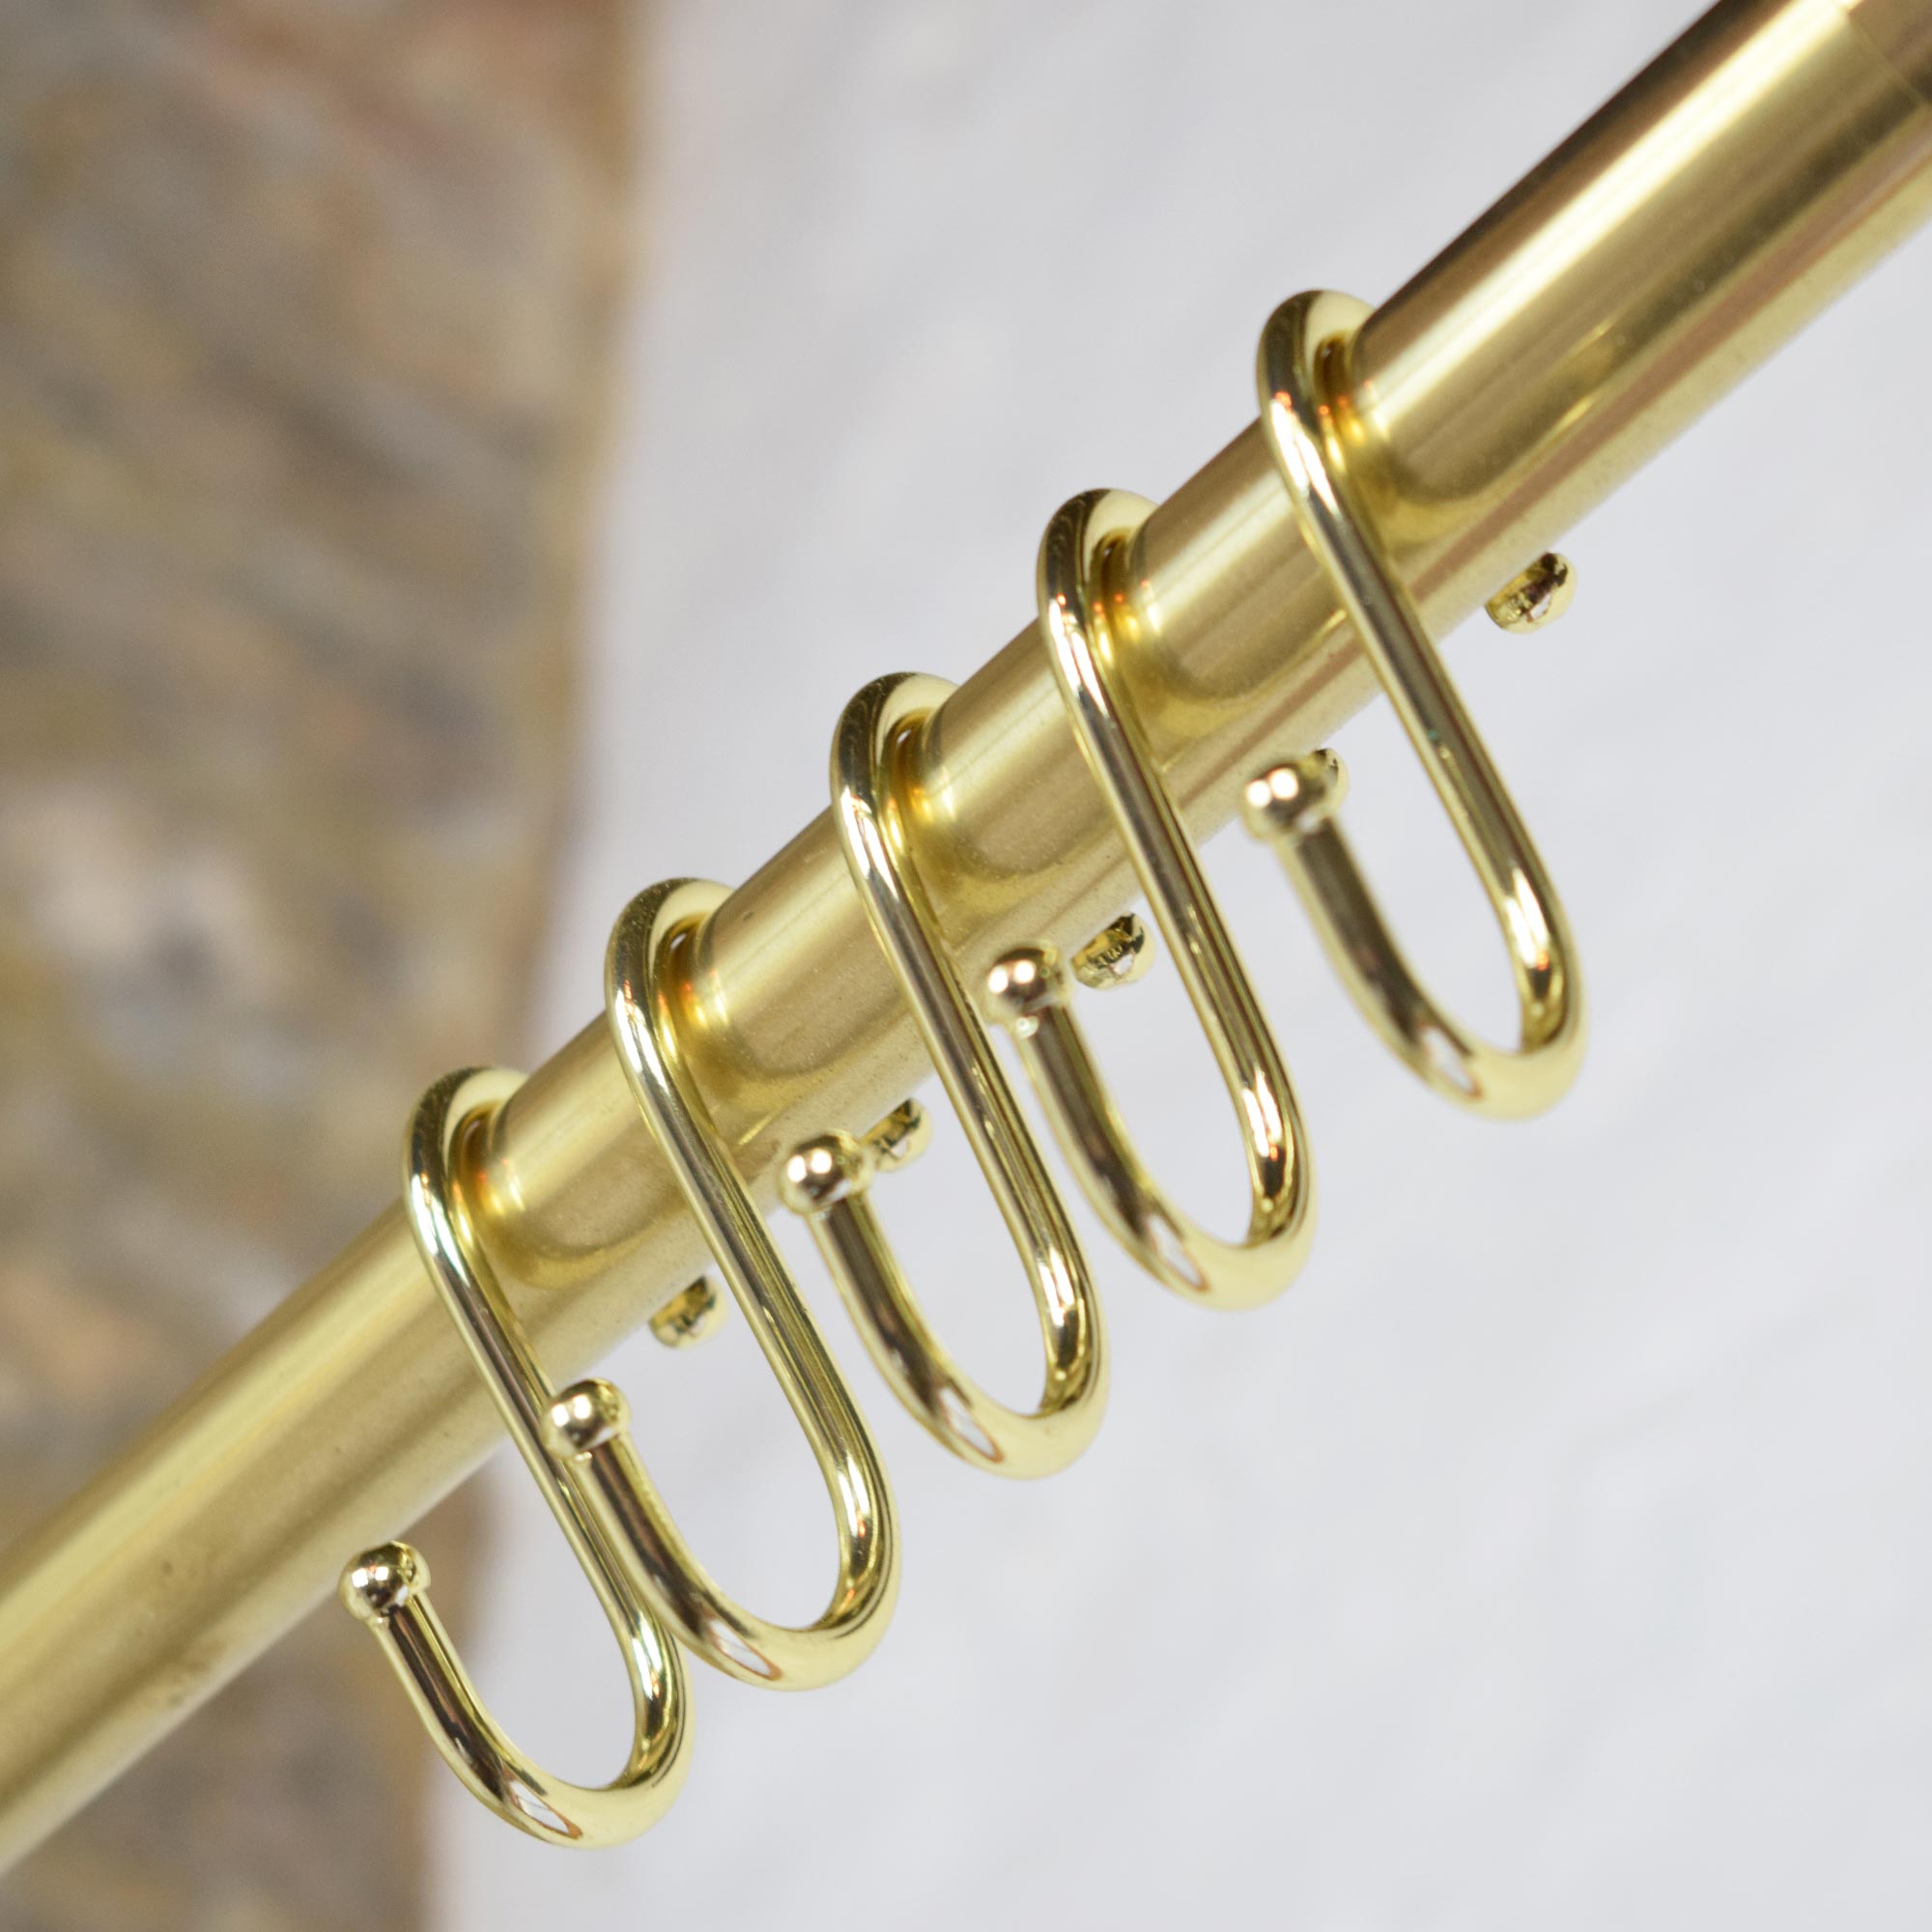 Hanging Brass Kitchen Rack Hook closeup